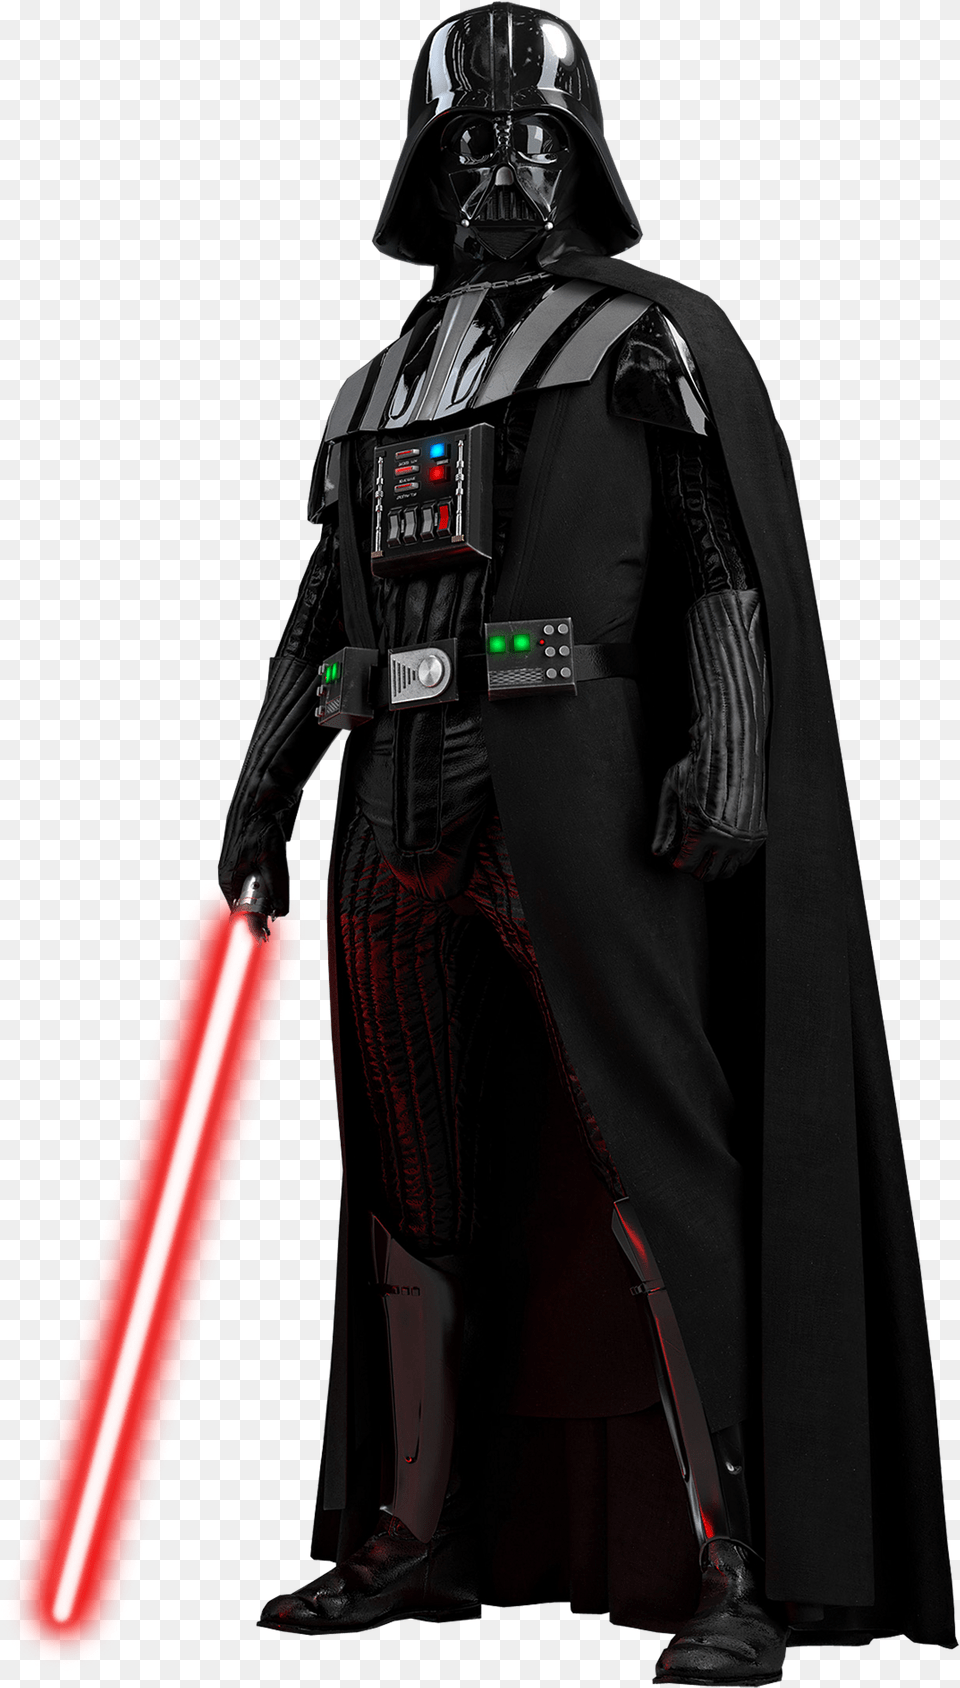 Star Wars Darth Vader Free Png